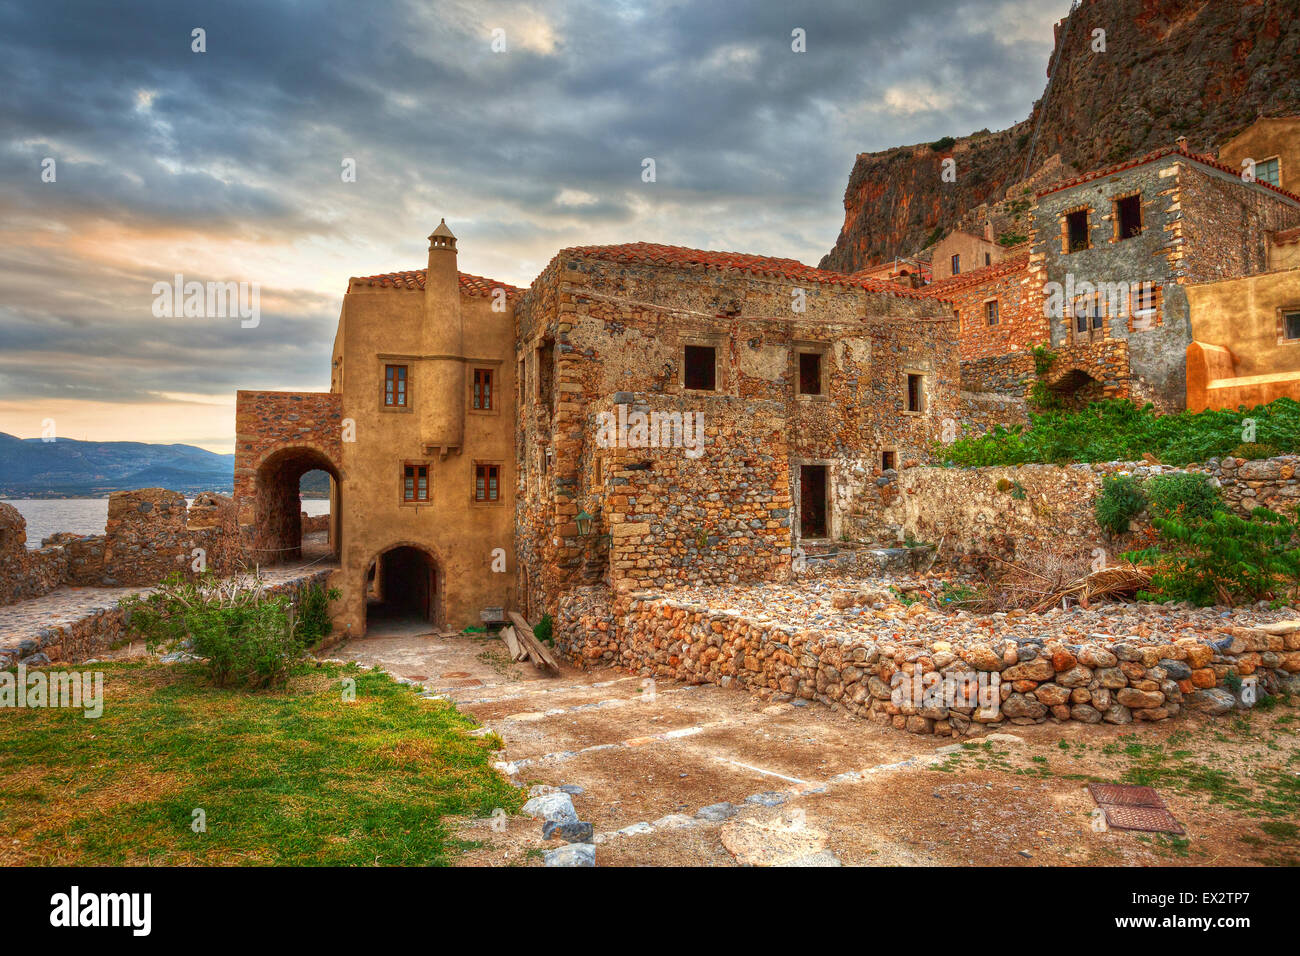 Monemvasia village in Peloponnese, Greece. Stock Photo